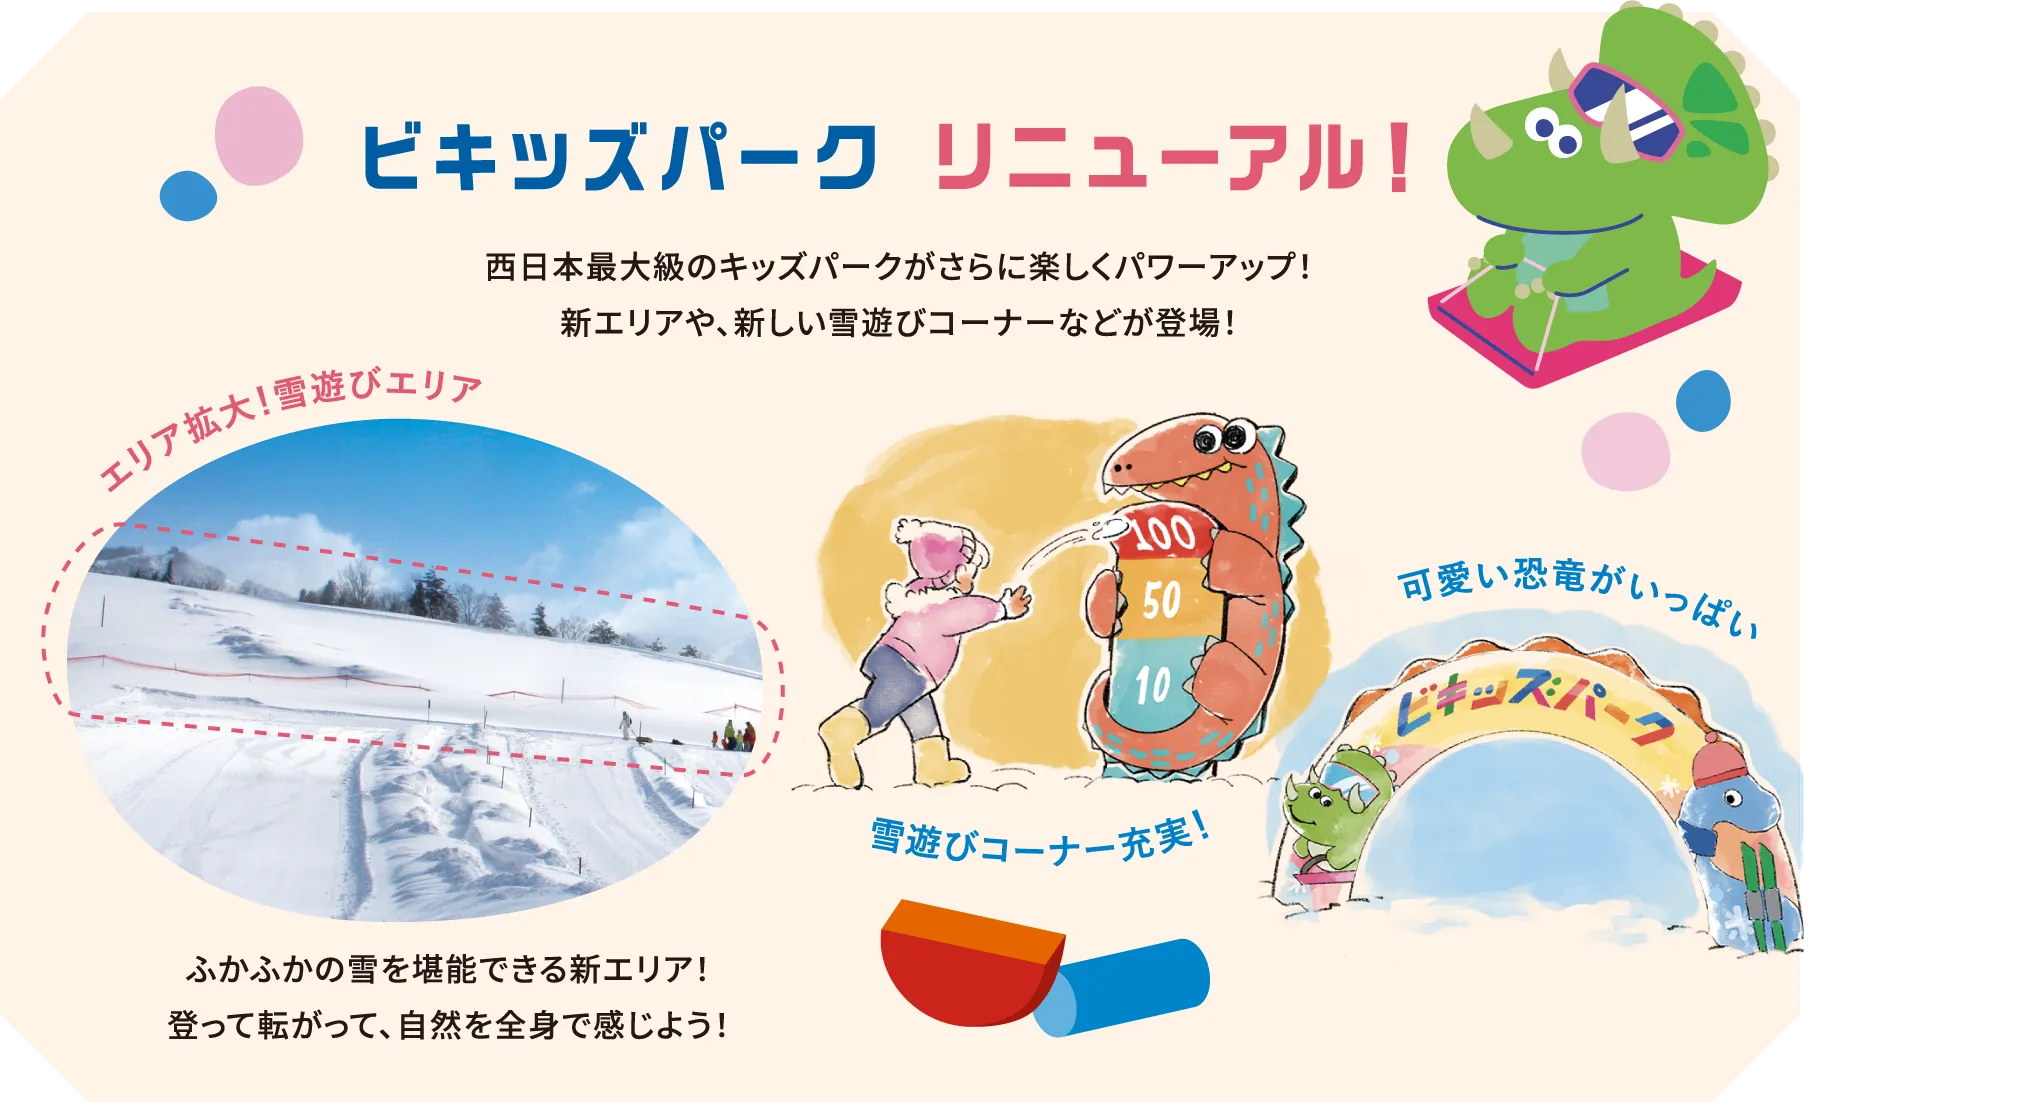 ビキッズパーク リニューアル！ 西日本最大級のキッズパークがさらに楽しくパワーアップ！新エリアや、新しい雪遊びコーナーなどが登場！